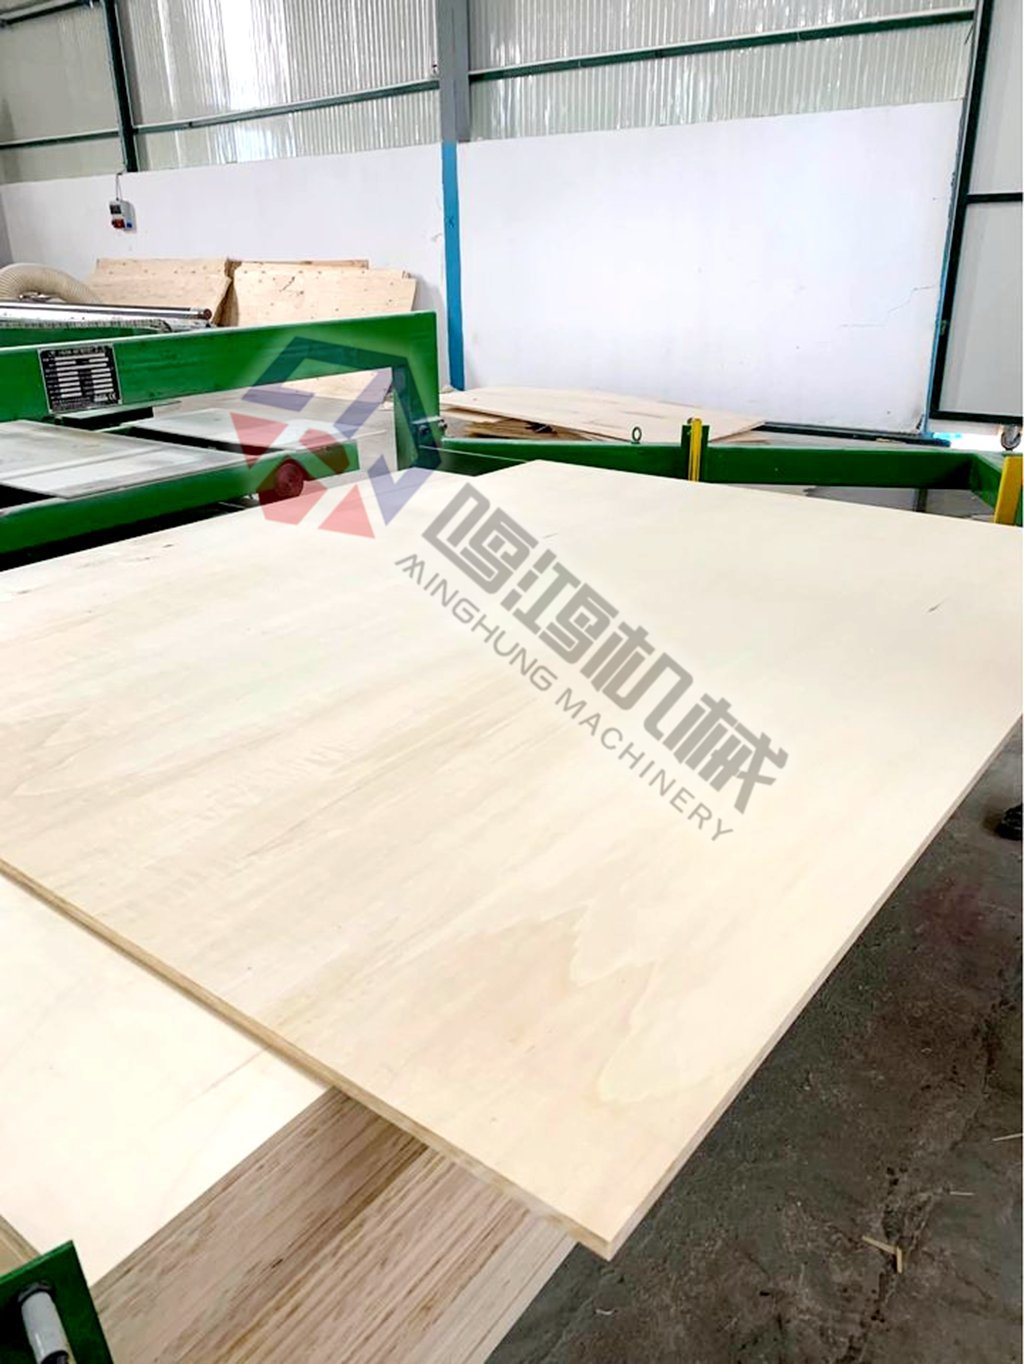 Plywood Cutting Saw untuk Produksi Plywood